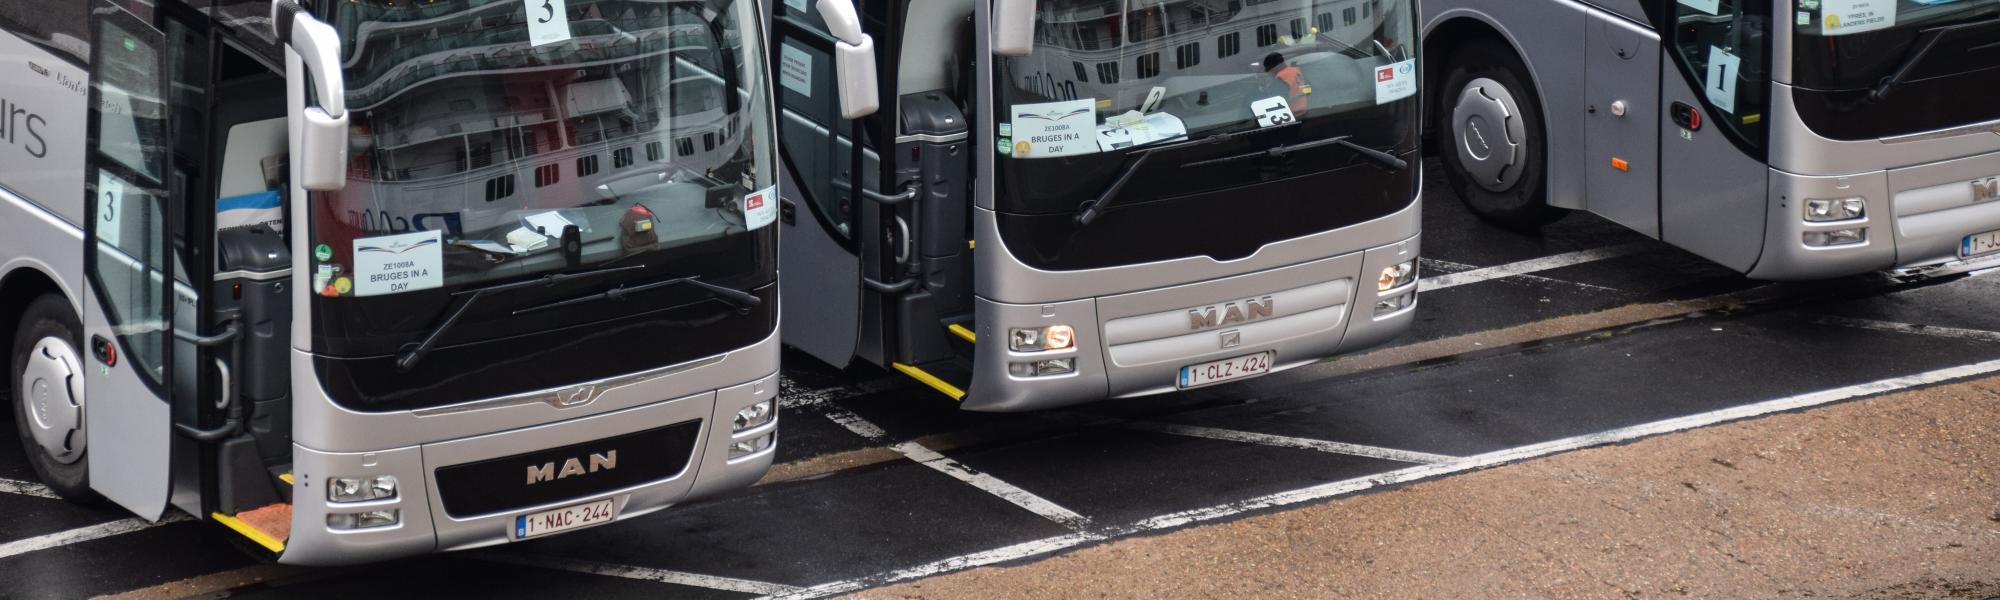 Бельгийский сектор междугородних автобусных перевозок просел на 90%